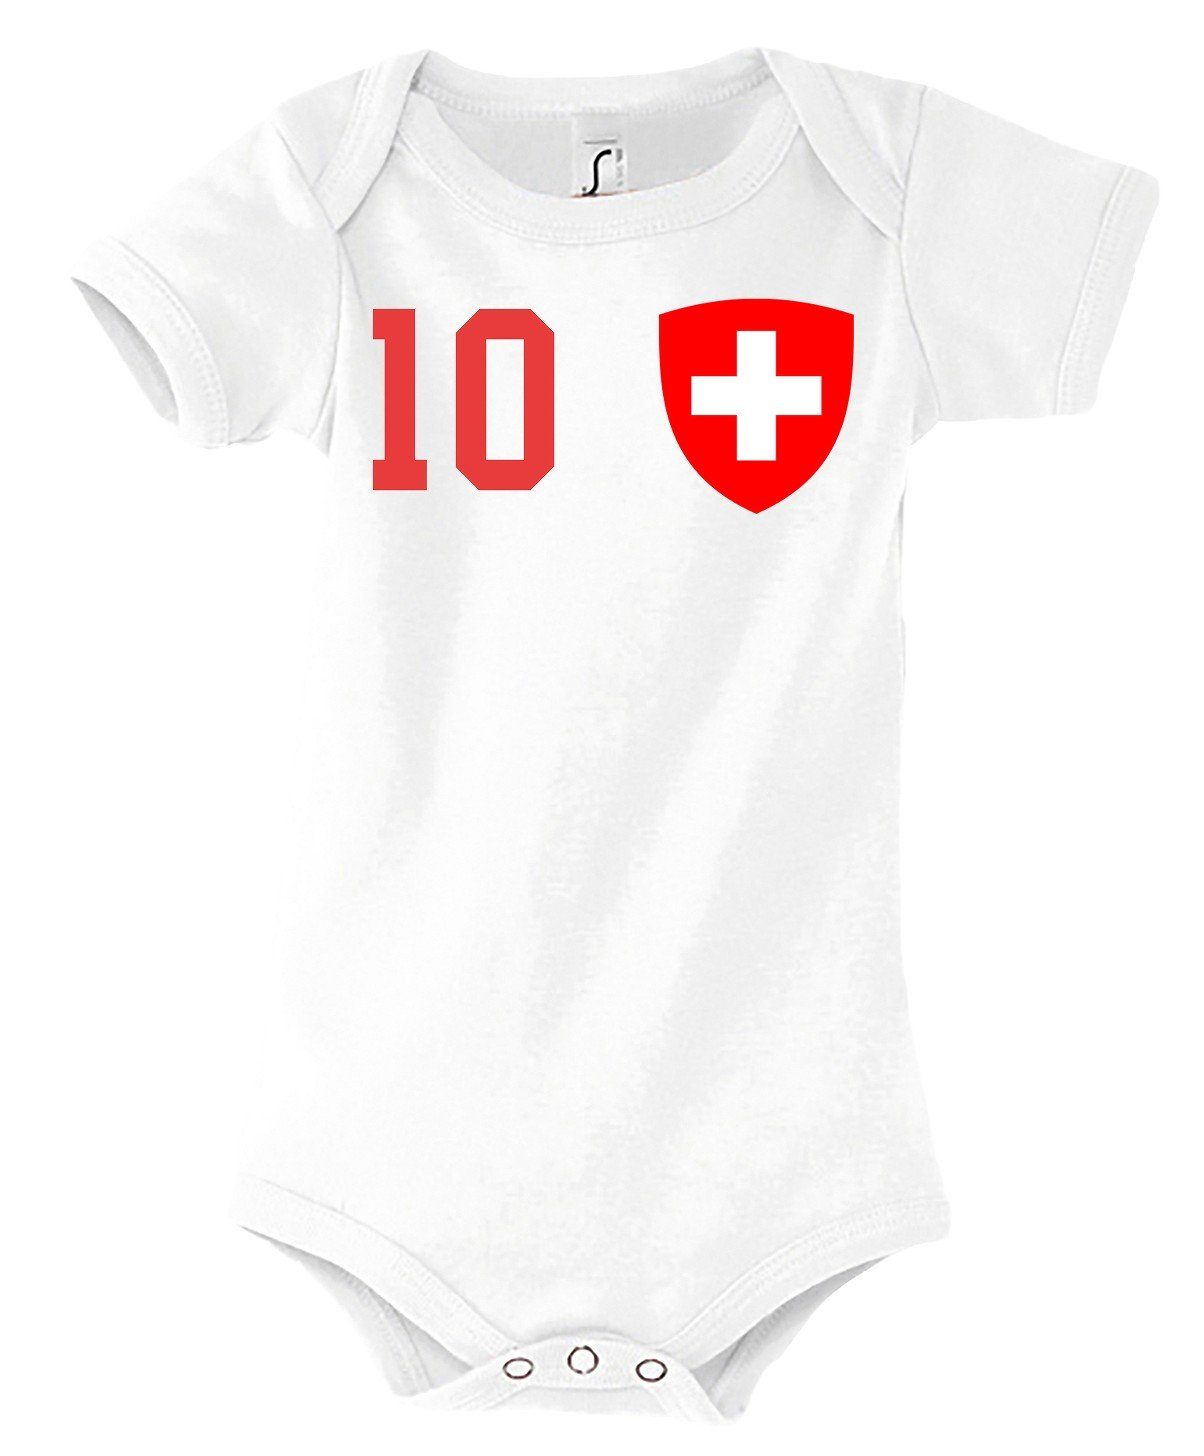 Schweiz Kinder Designz Kurzarmbody Baby trendigem Weiß mit Body Motiv Strampler Youth